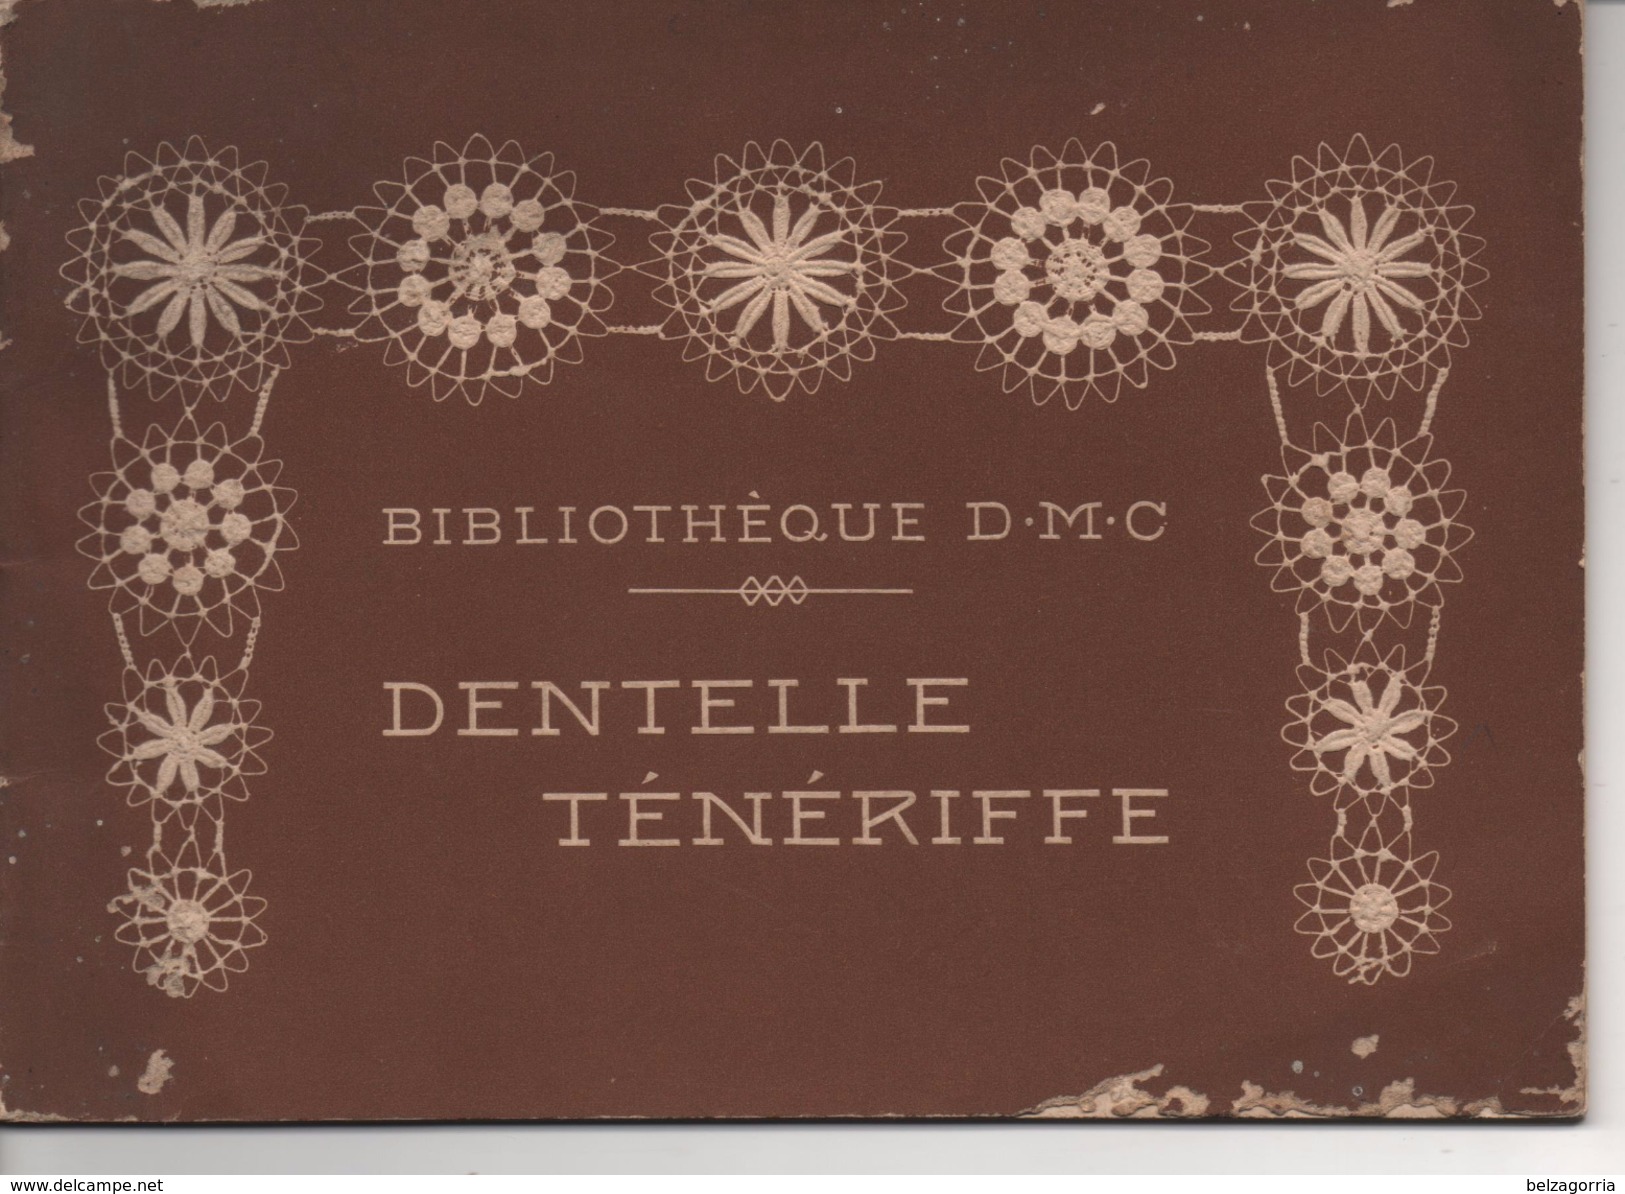 DENTELLE TENERIFFE  - BIBLIOTHEQUE D.M.C. - TH. DE DILLMONT - LA SOCIETE ANONYME  DOLLFUS - MIEG  &  Cie - VOIR SCANS - Encajes Y Tejidos